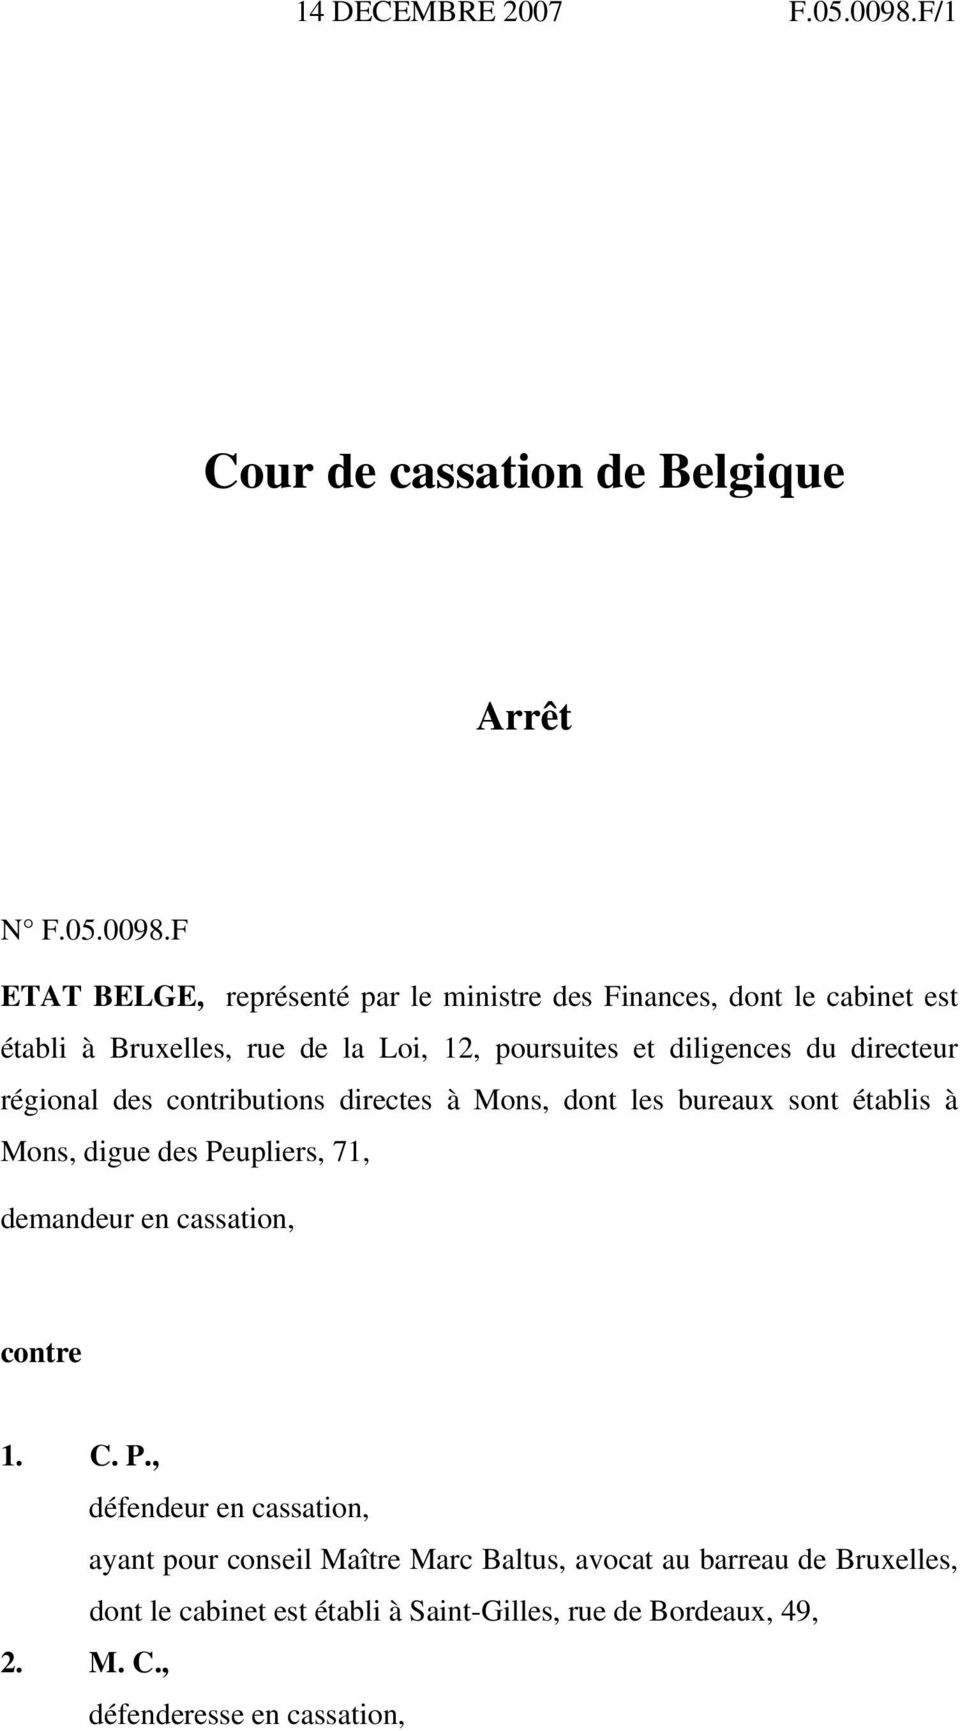 F ETAT BELGE, représenté par le ministre des Finances, dont le cabinet est établi à Bruxelles, rue de la Loi, 12, poursuites et diligences du